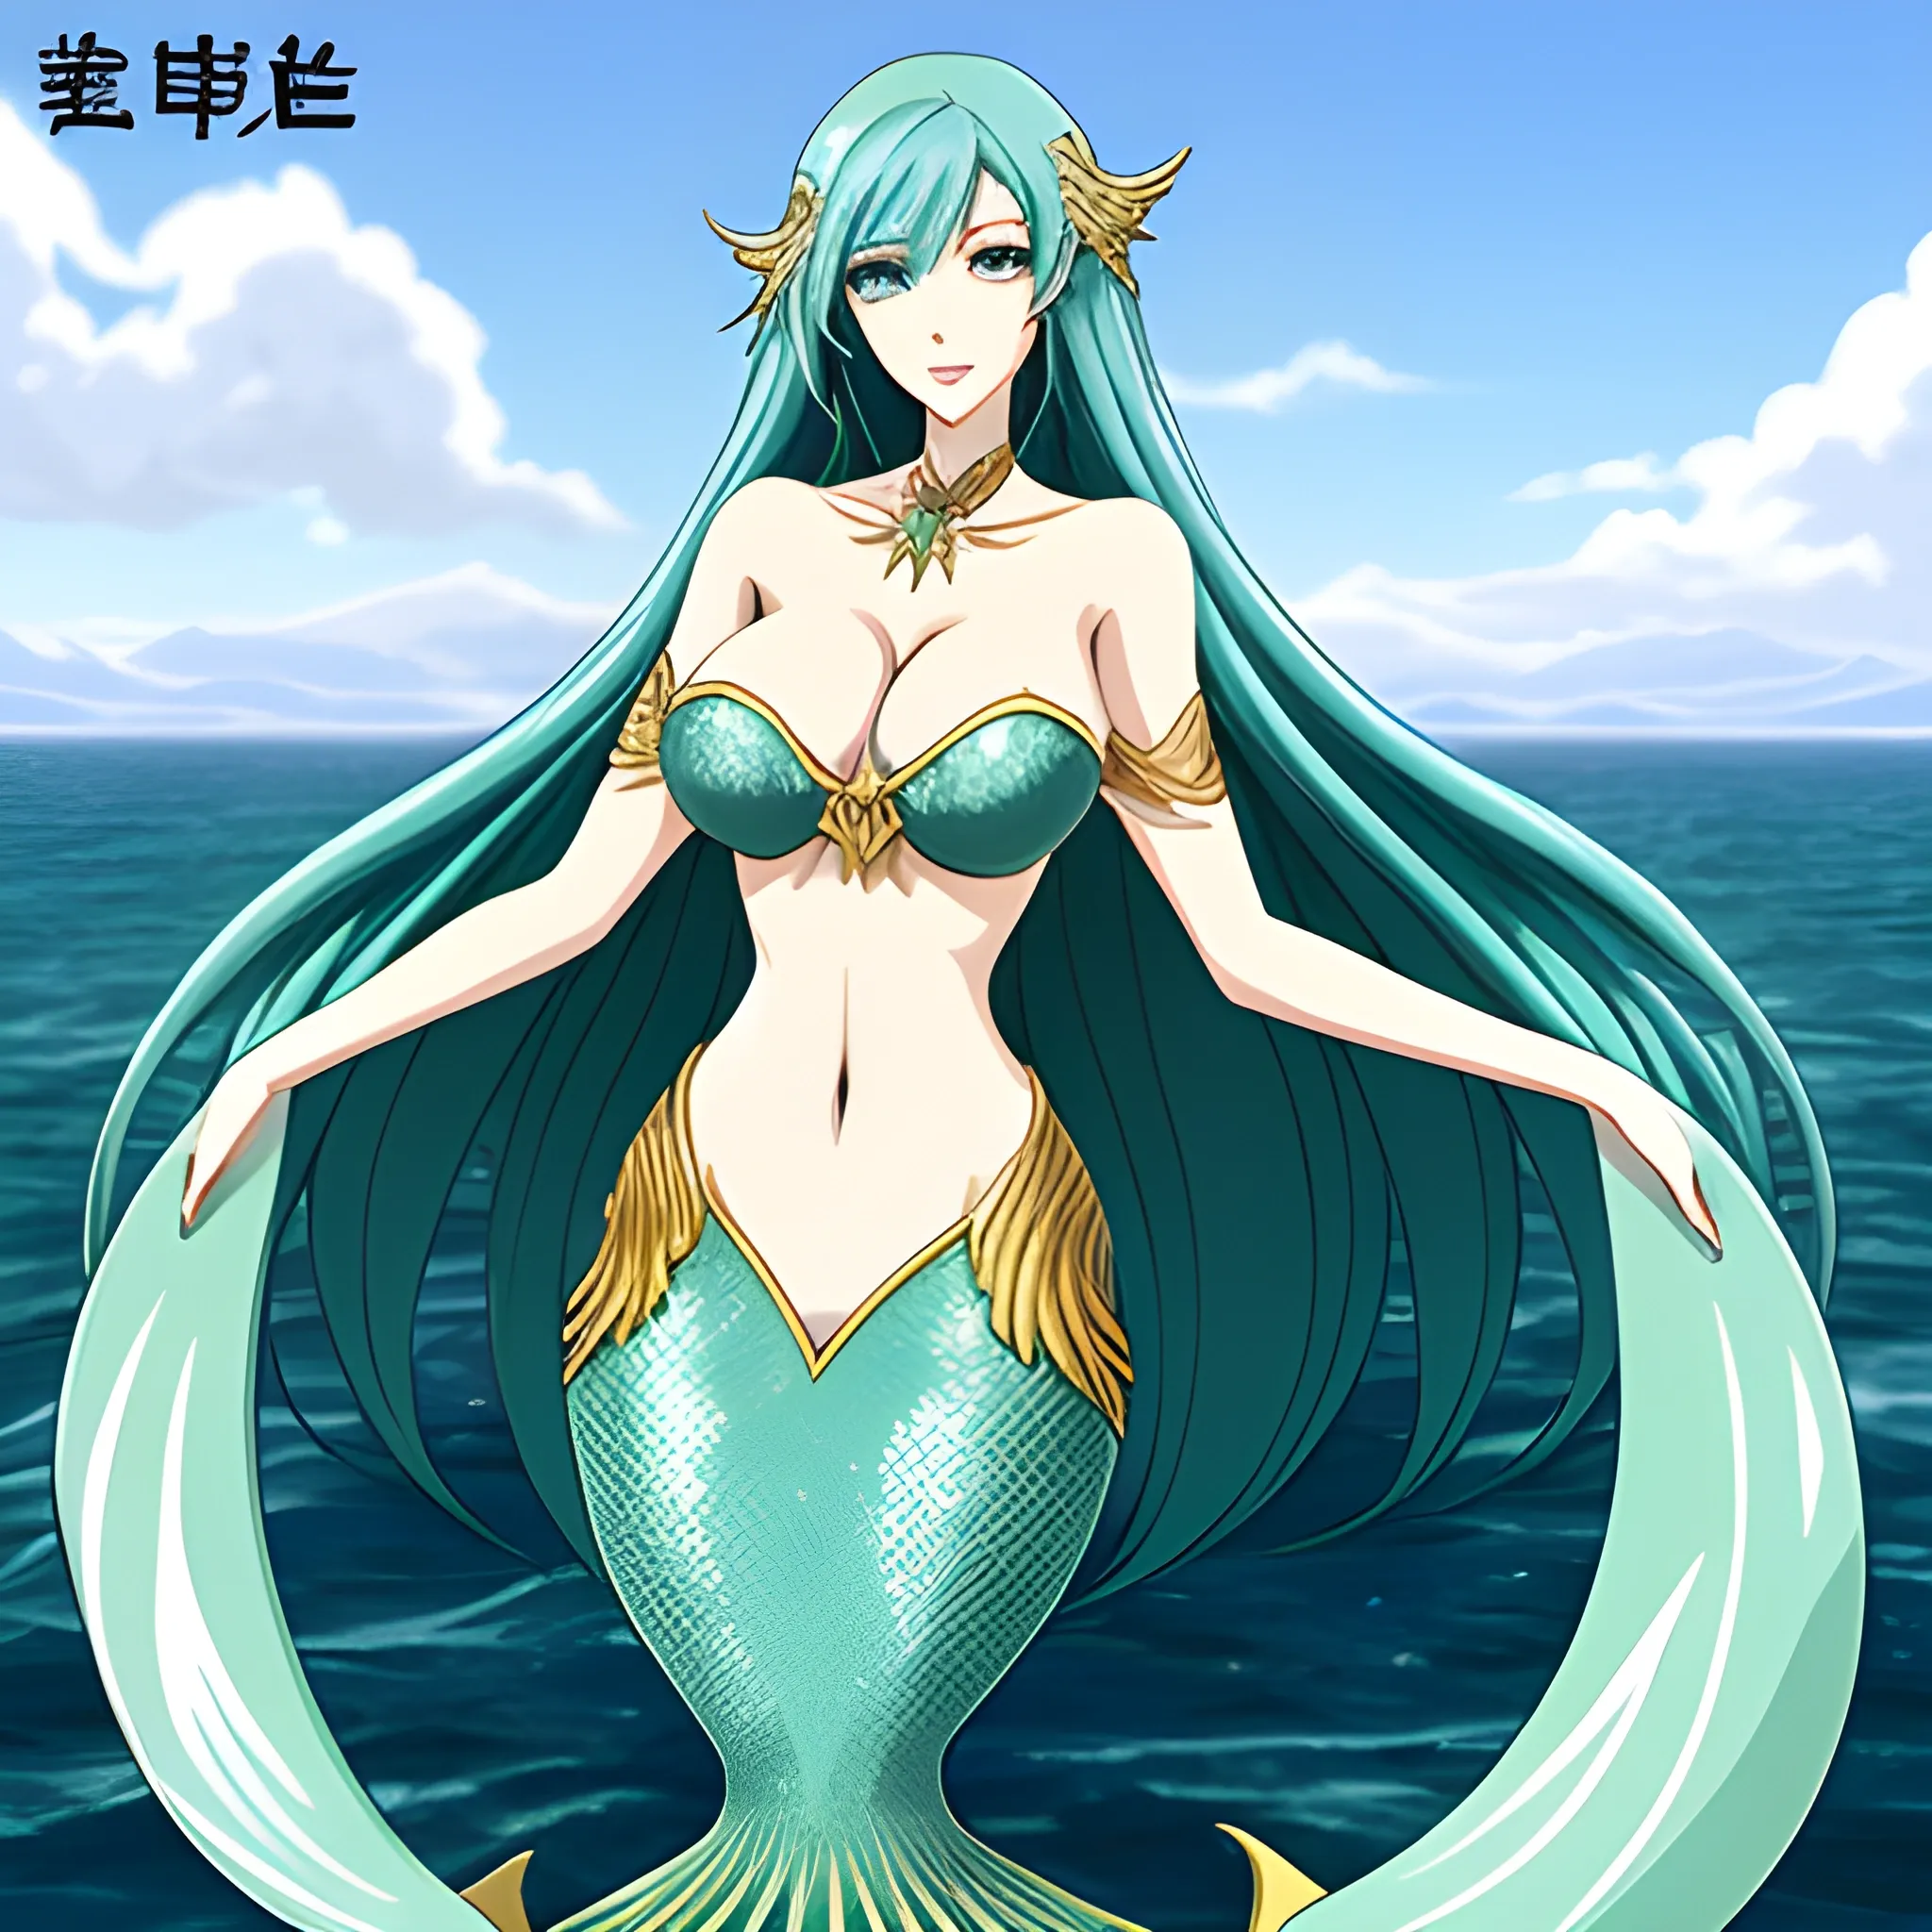 anime, mermaid goddess, pretty girl face, long teal hair, tall skinny full body